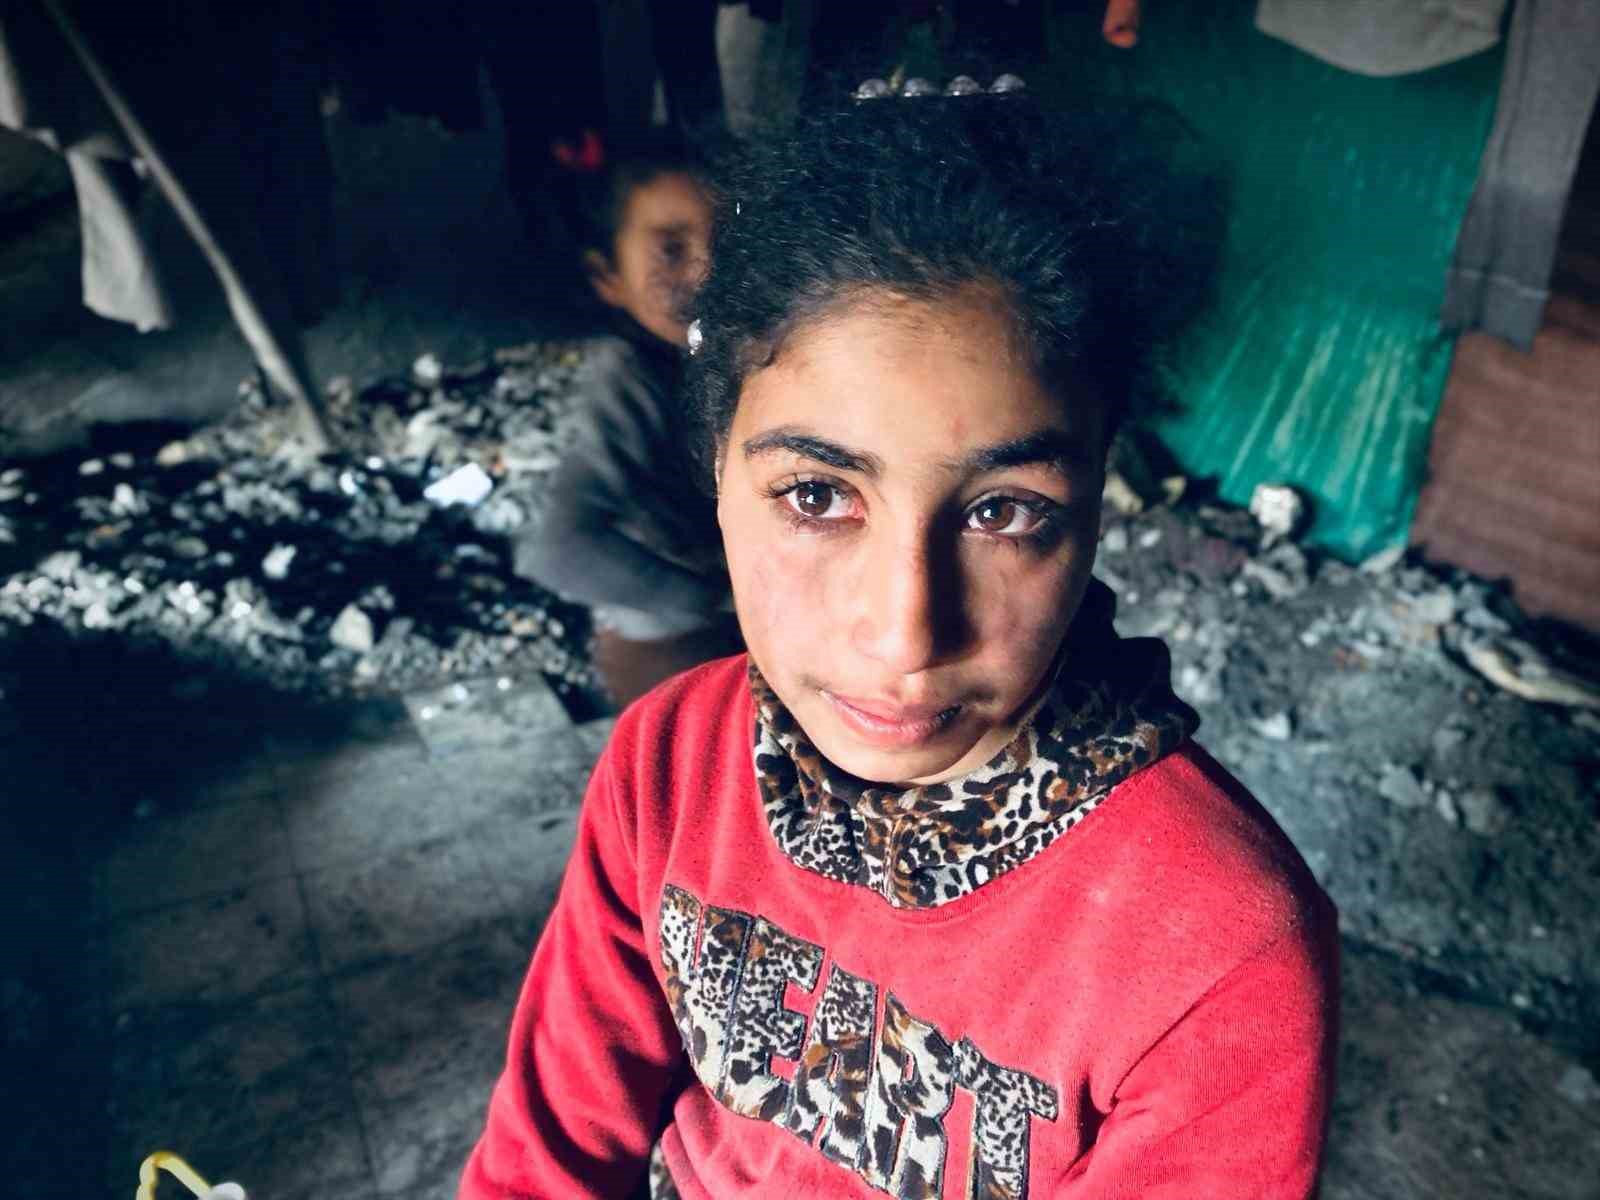 Gazzeliler sığındıkları enkaz halindeki binalarda yaşam mücadelesi veriyor